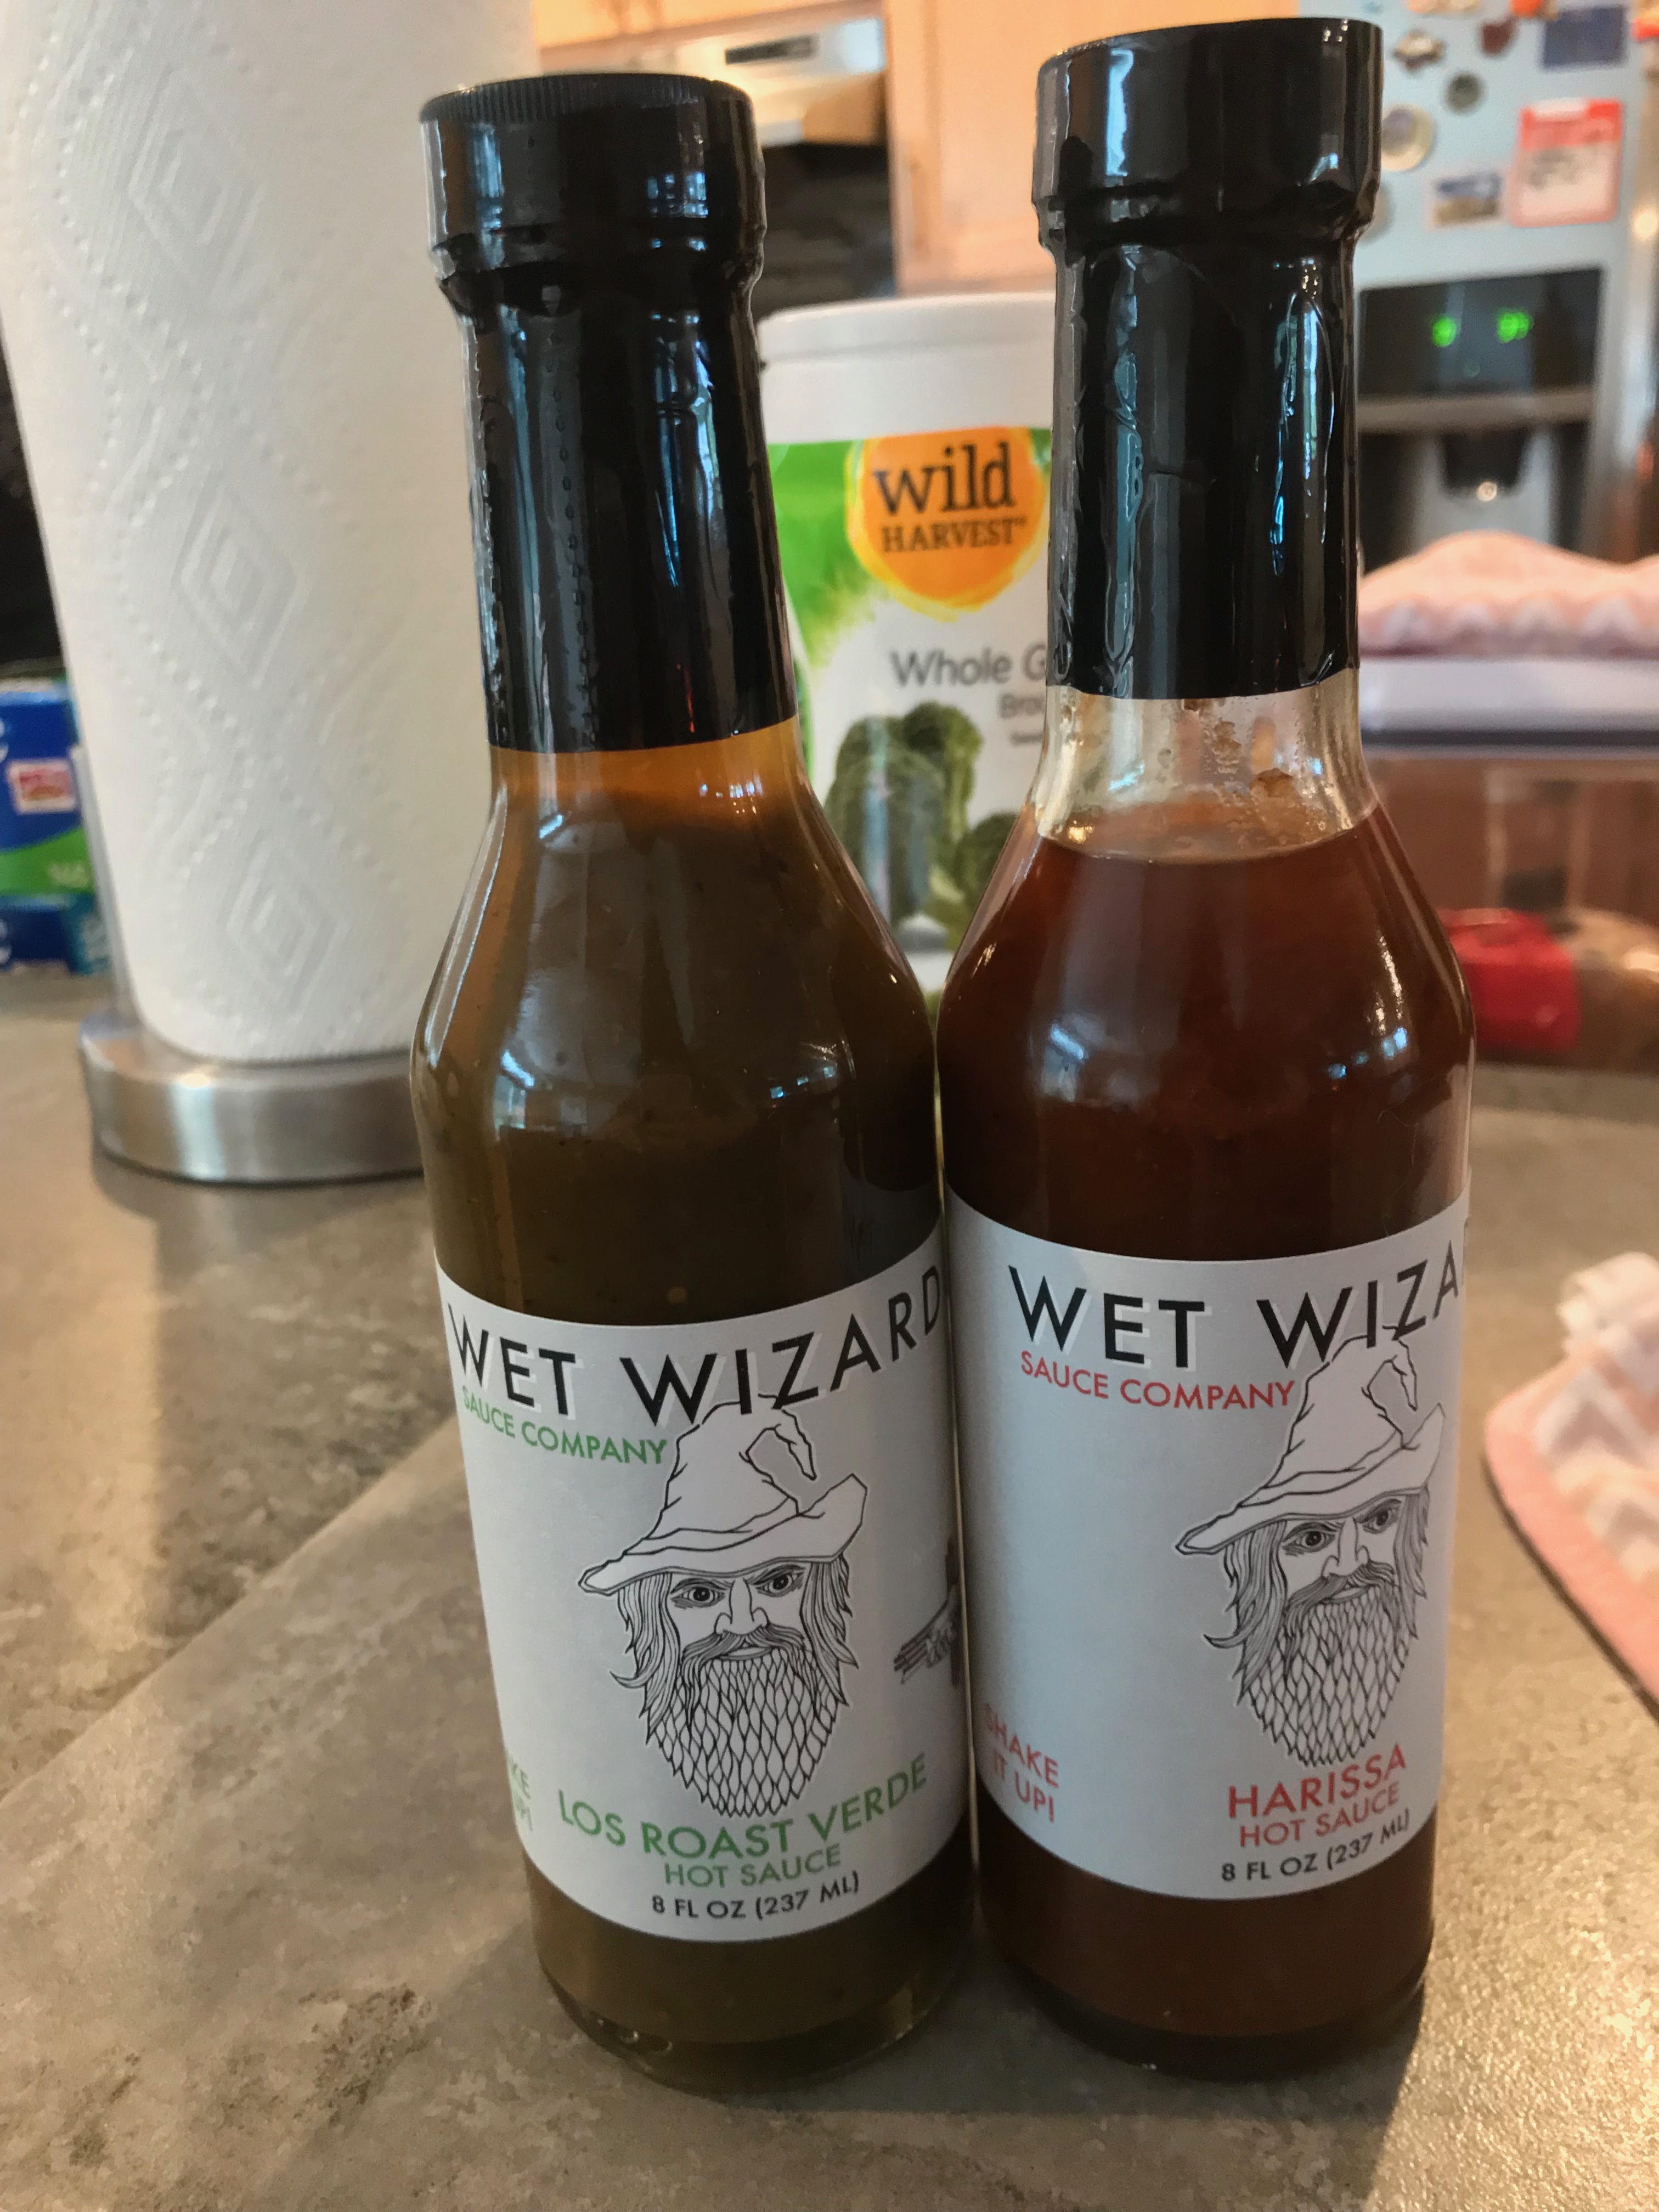 Wet wizard los roast verde and harissa hot sauce bottles